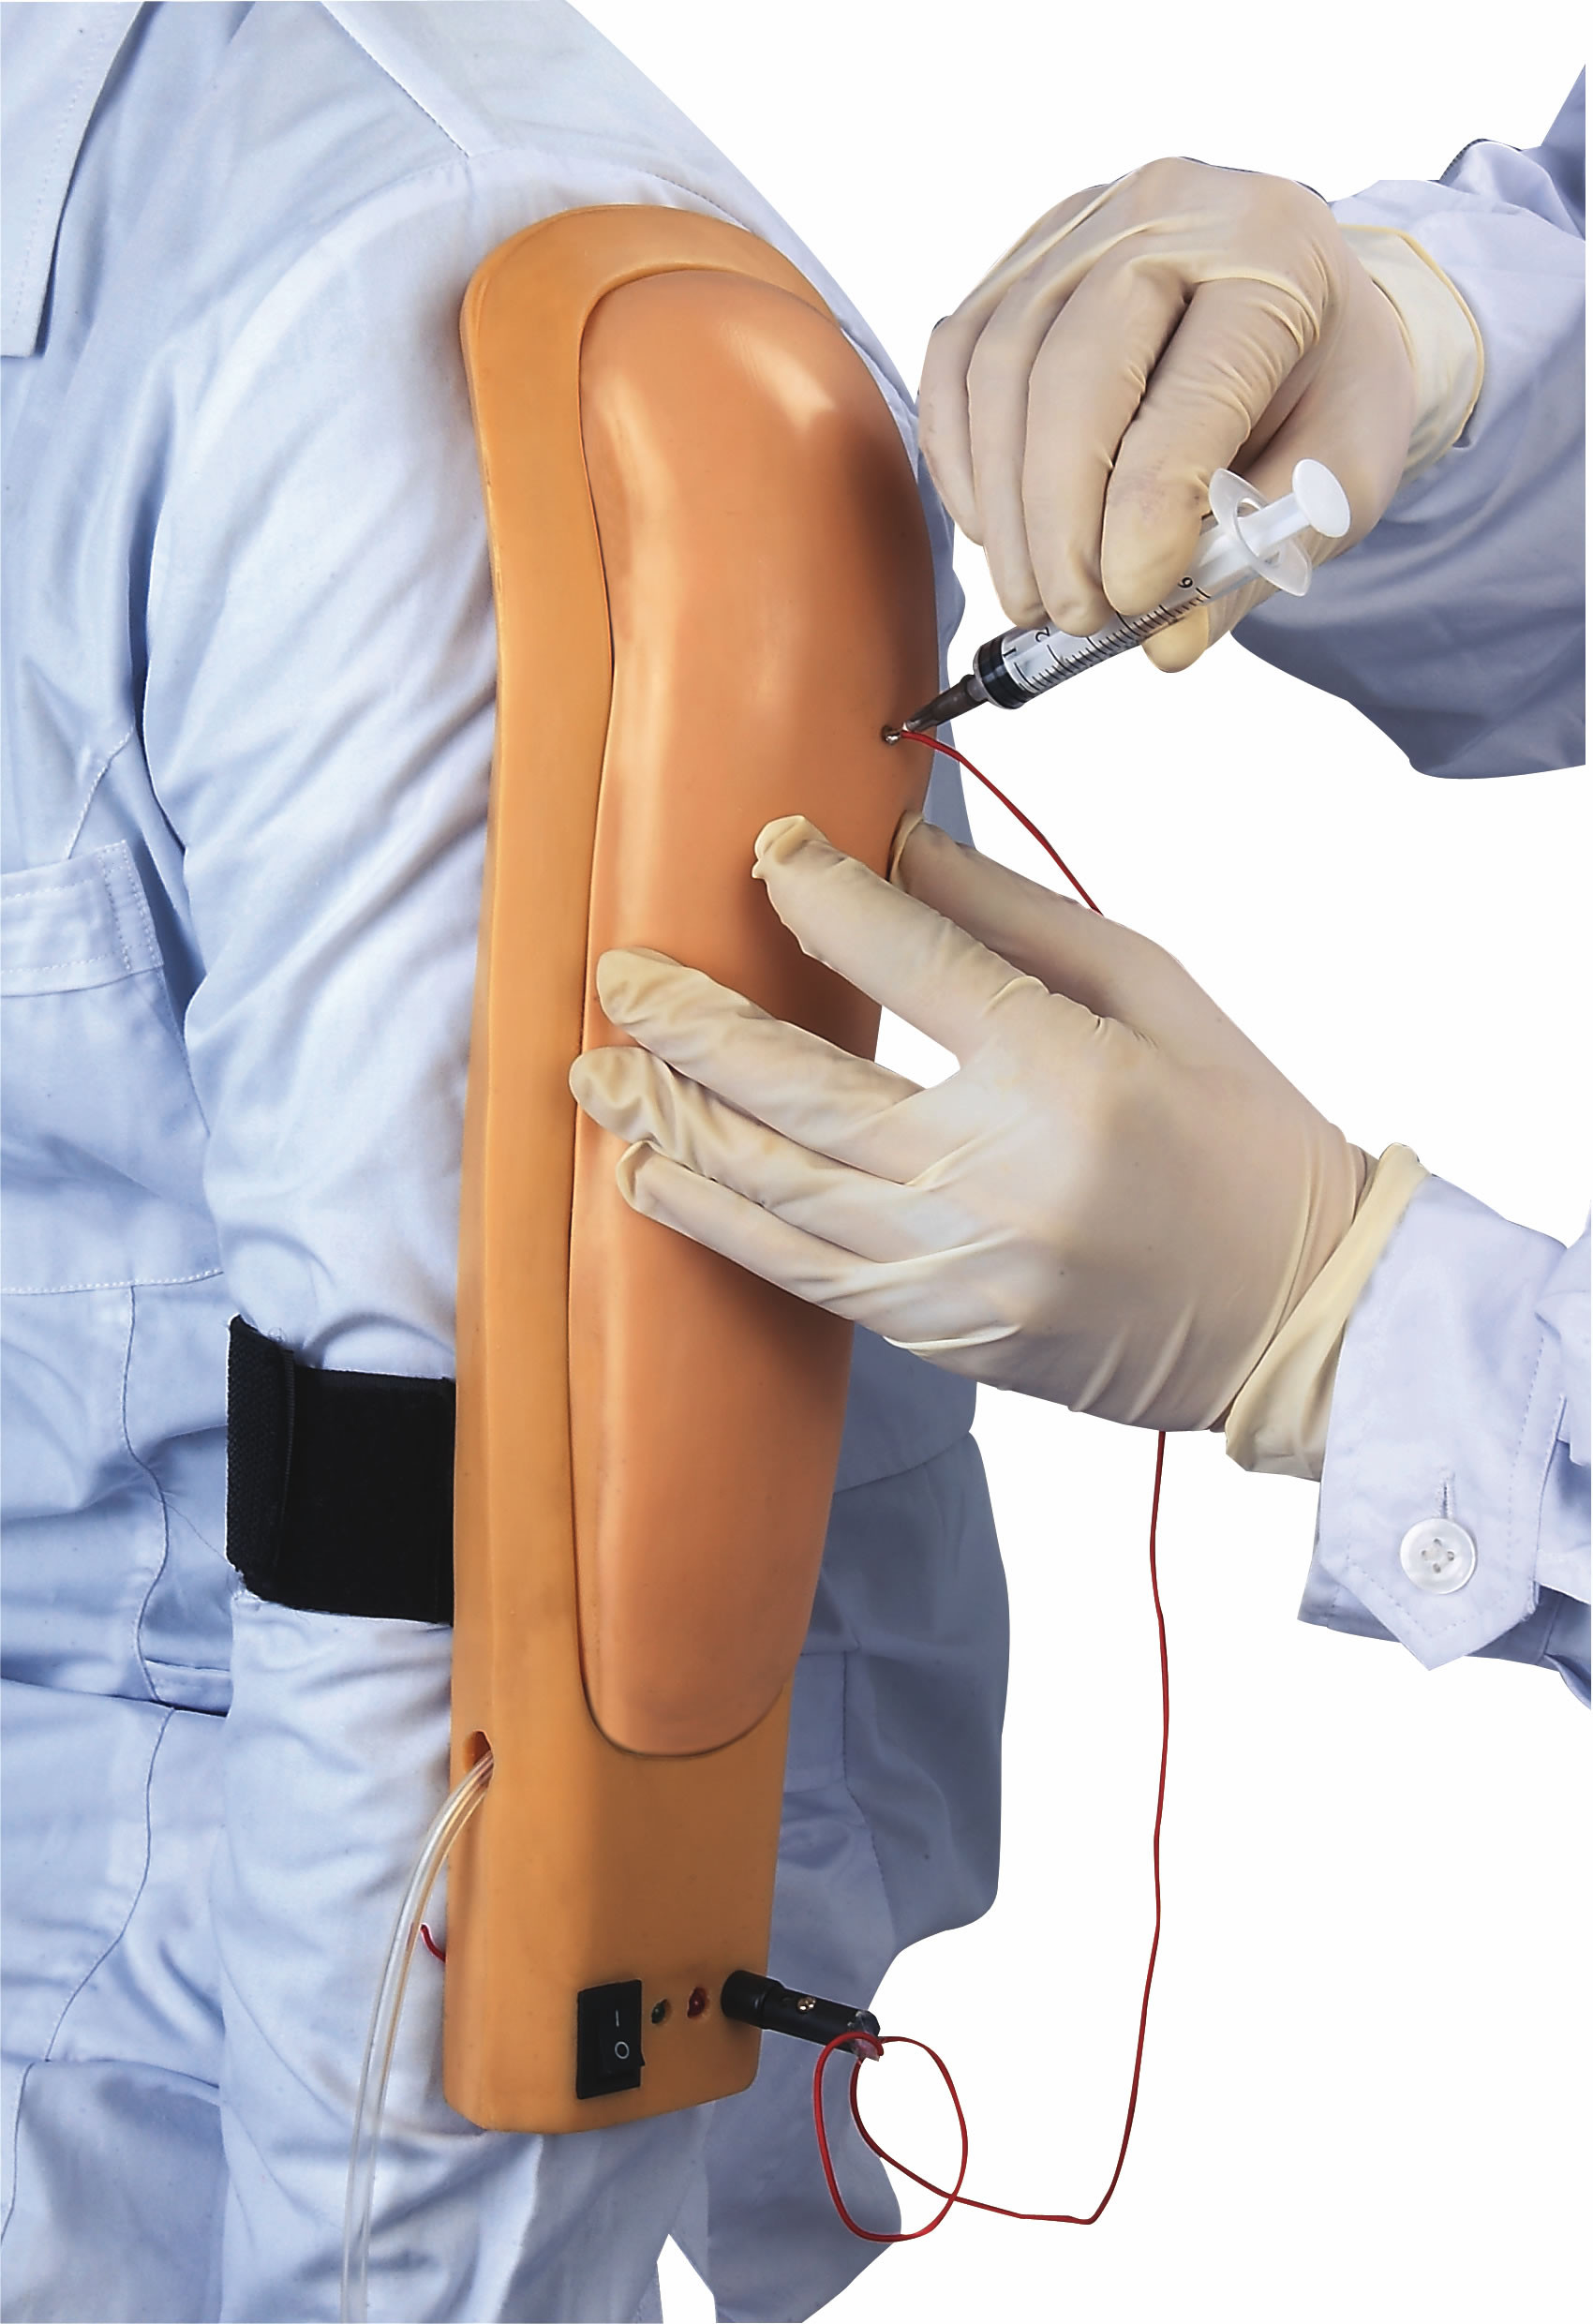 Parte superior Wearable do simulador da injeção intramuscular - arme com a cor da pele